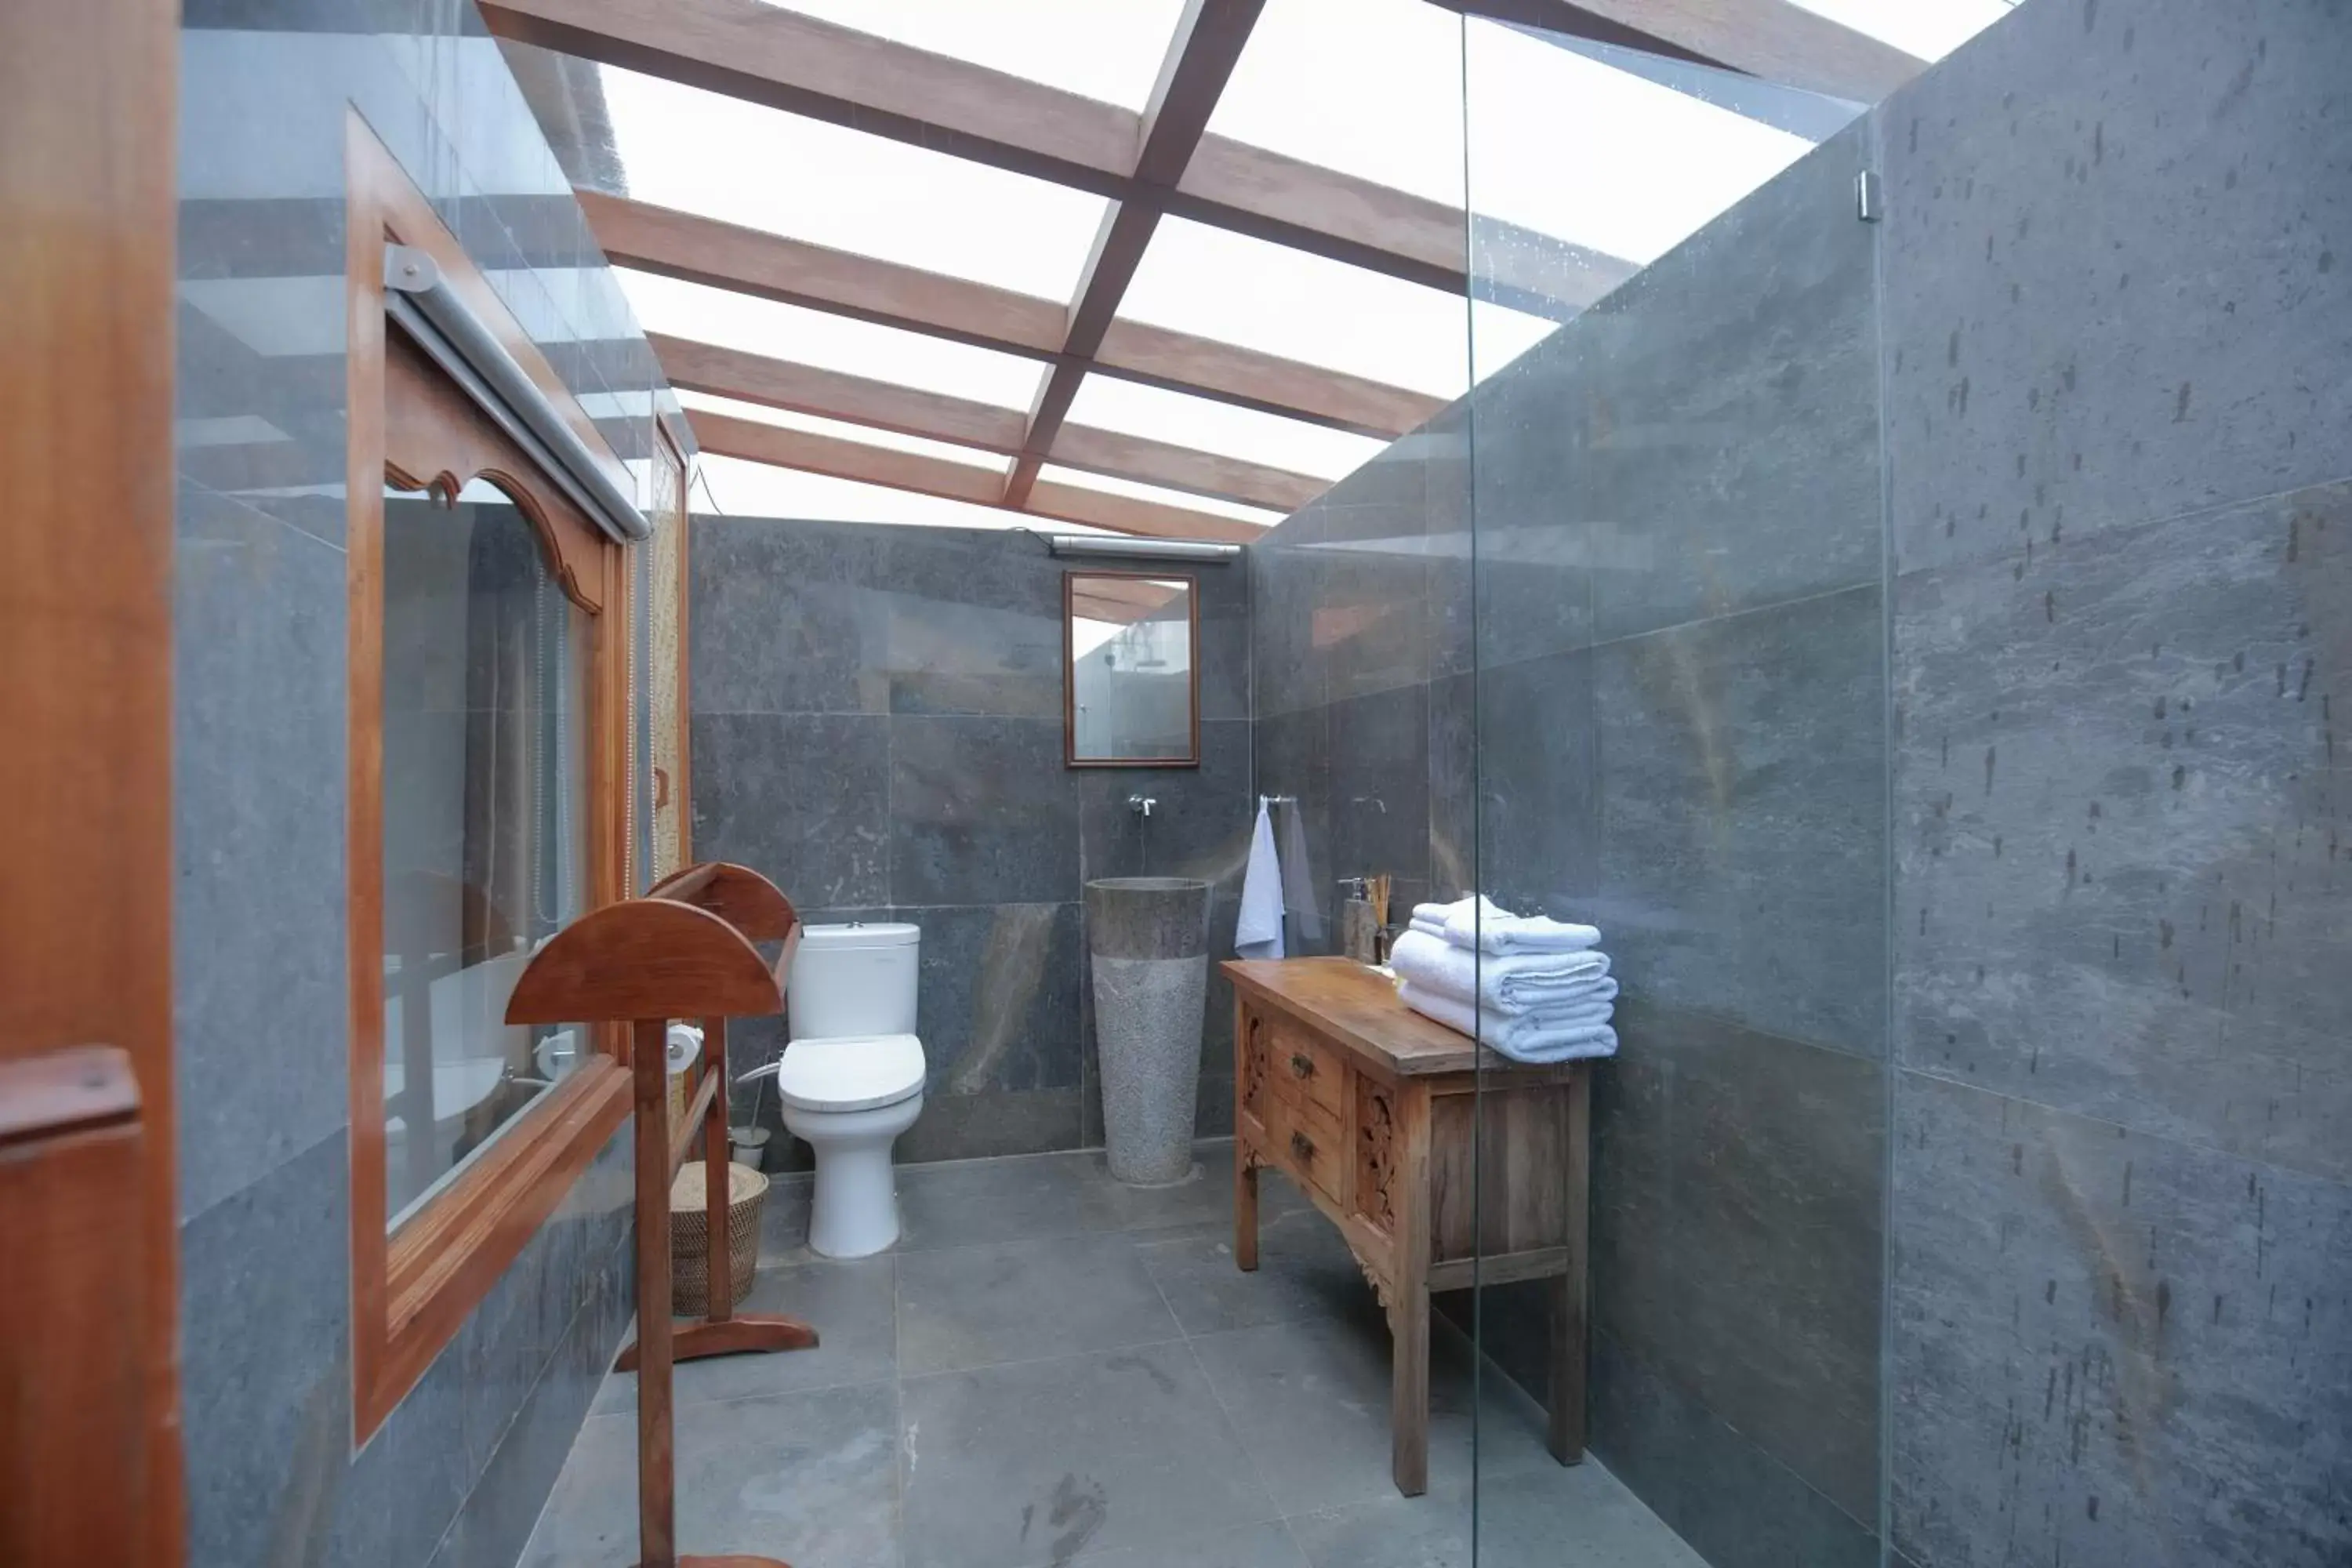 Shower, Bathroom in Gayatri